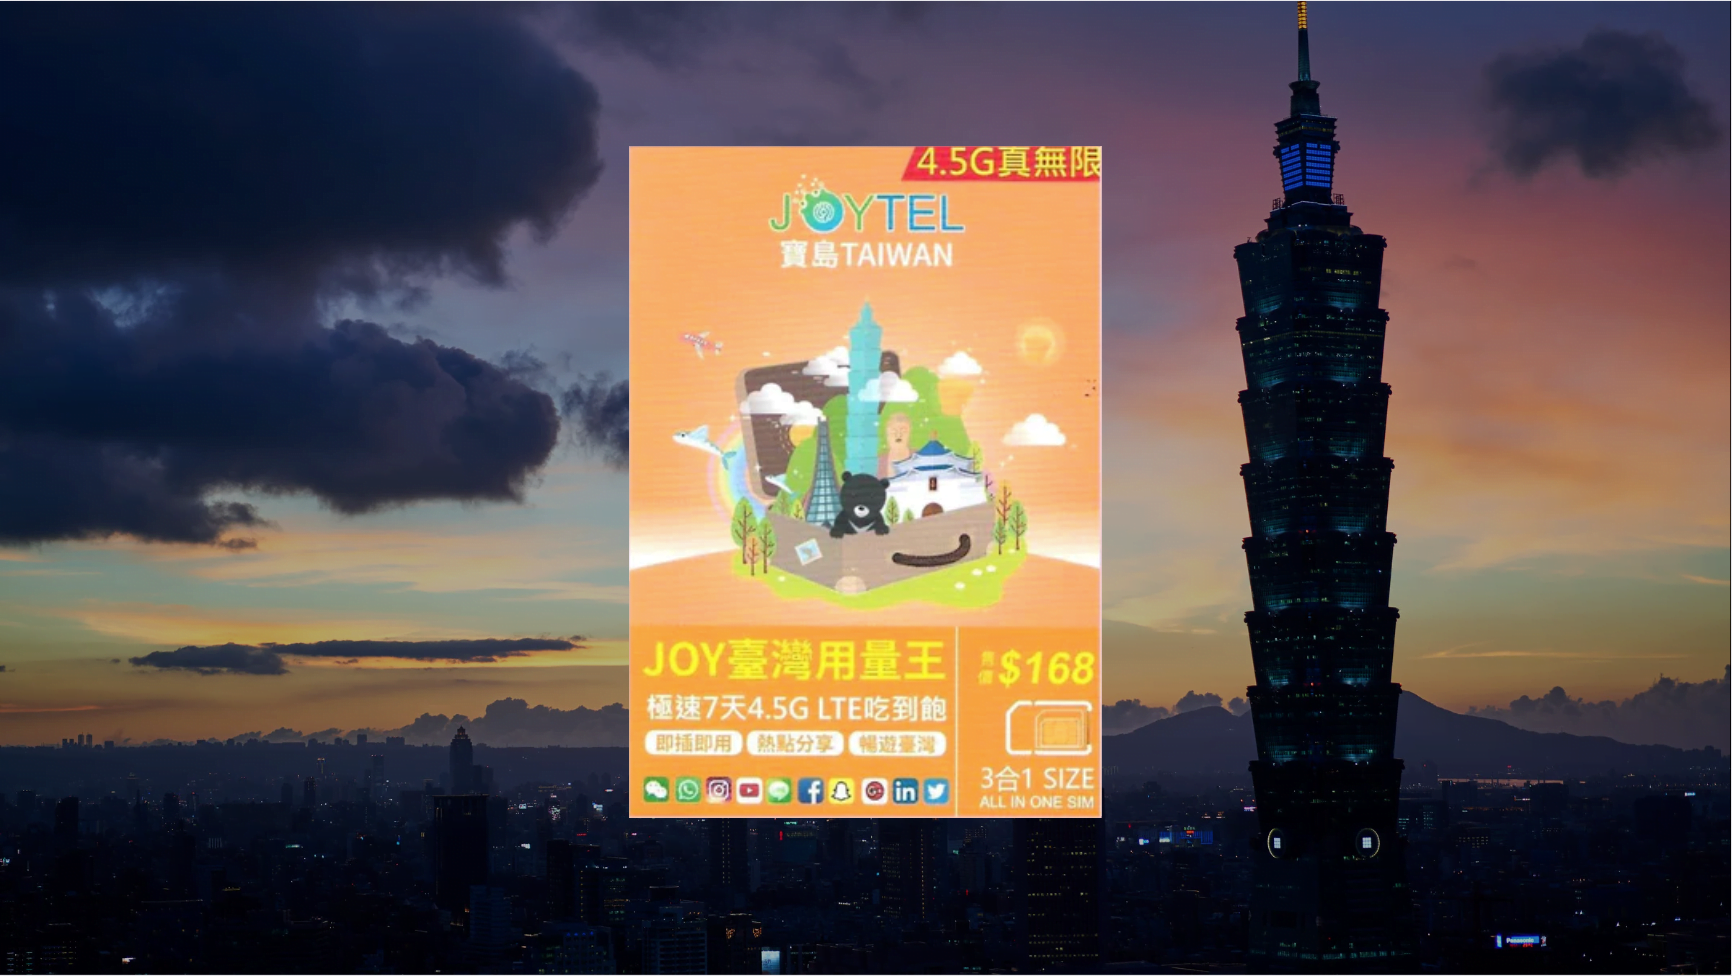 【售價】JOYTEL 極速 台灣 7日 4.5G / 5G 無限數據上網卡，網店平賣 